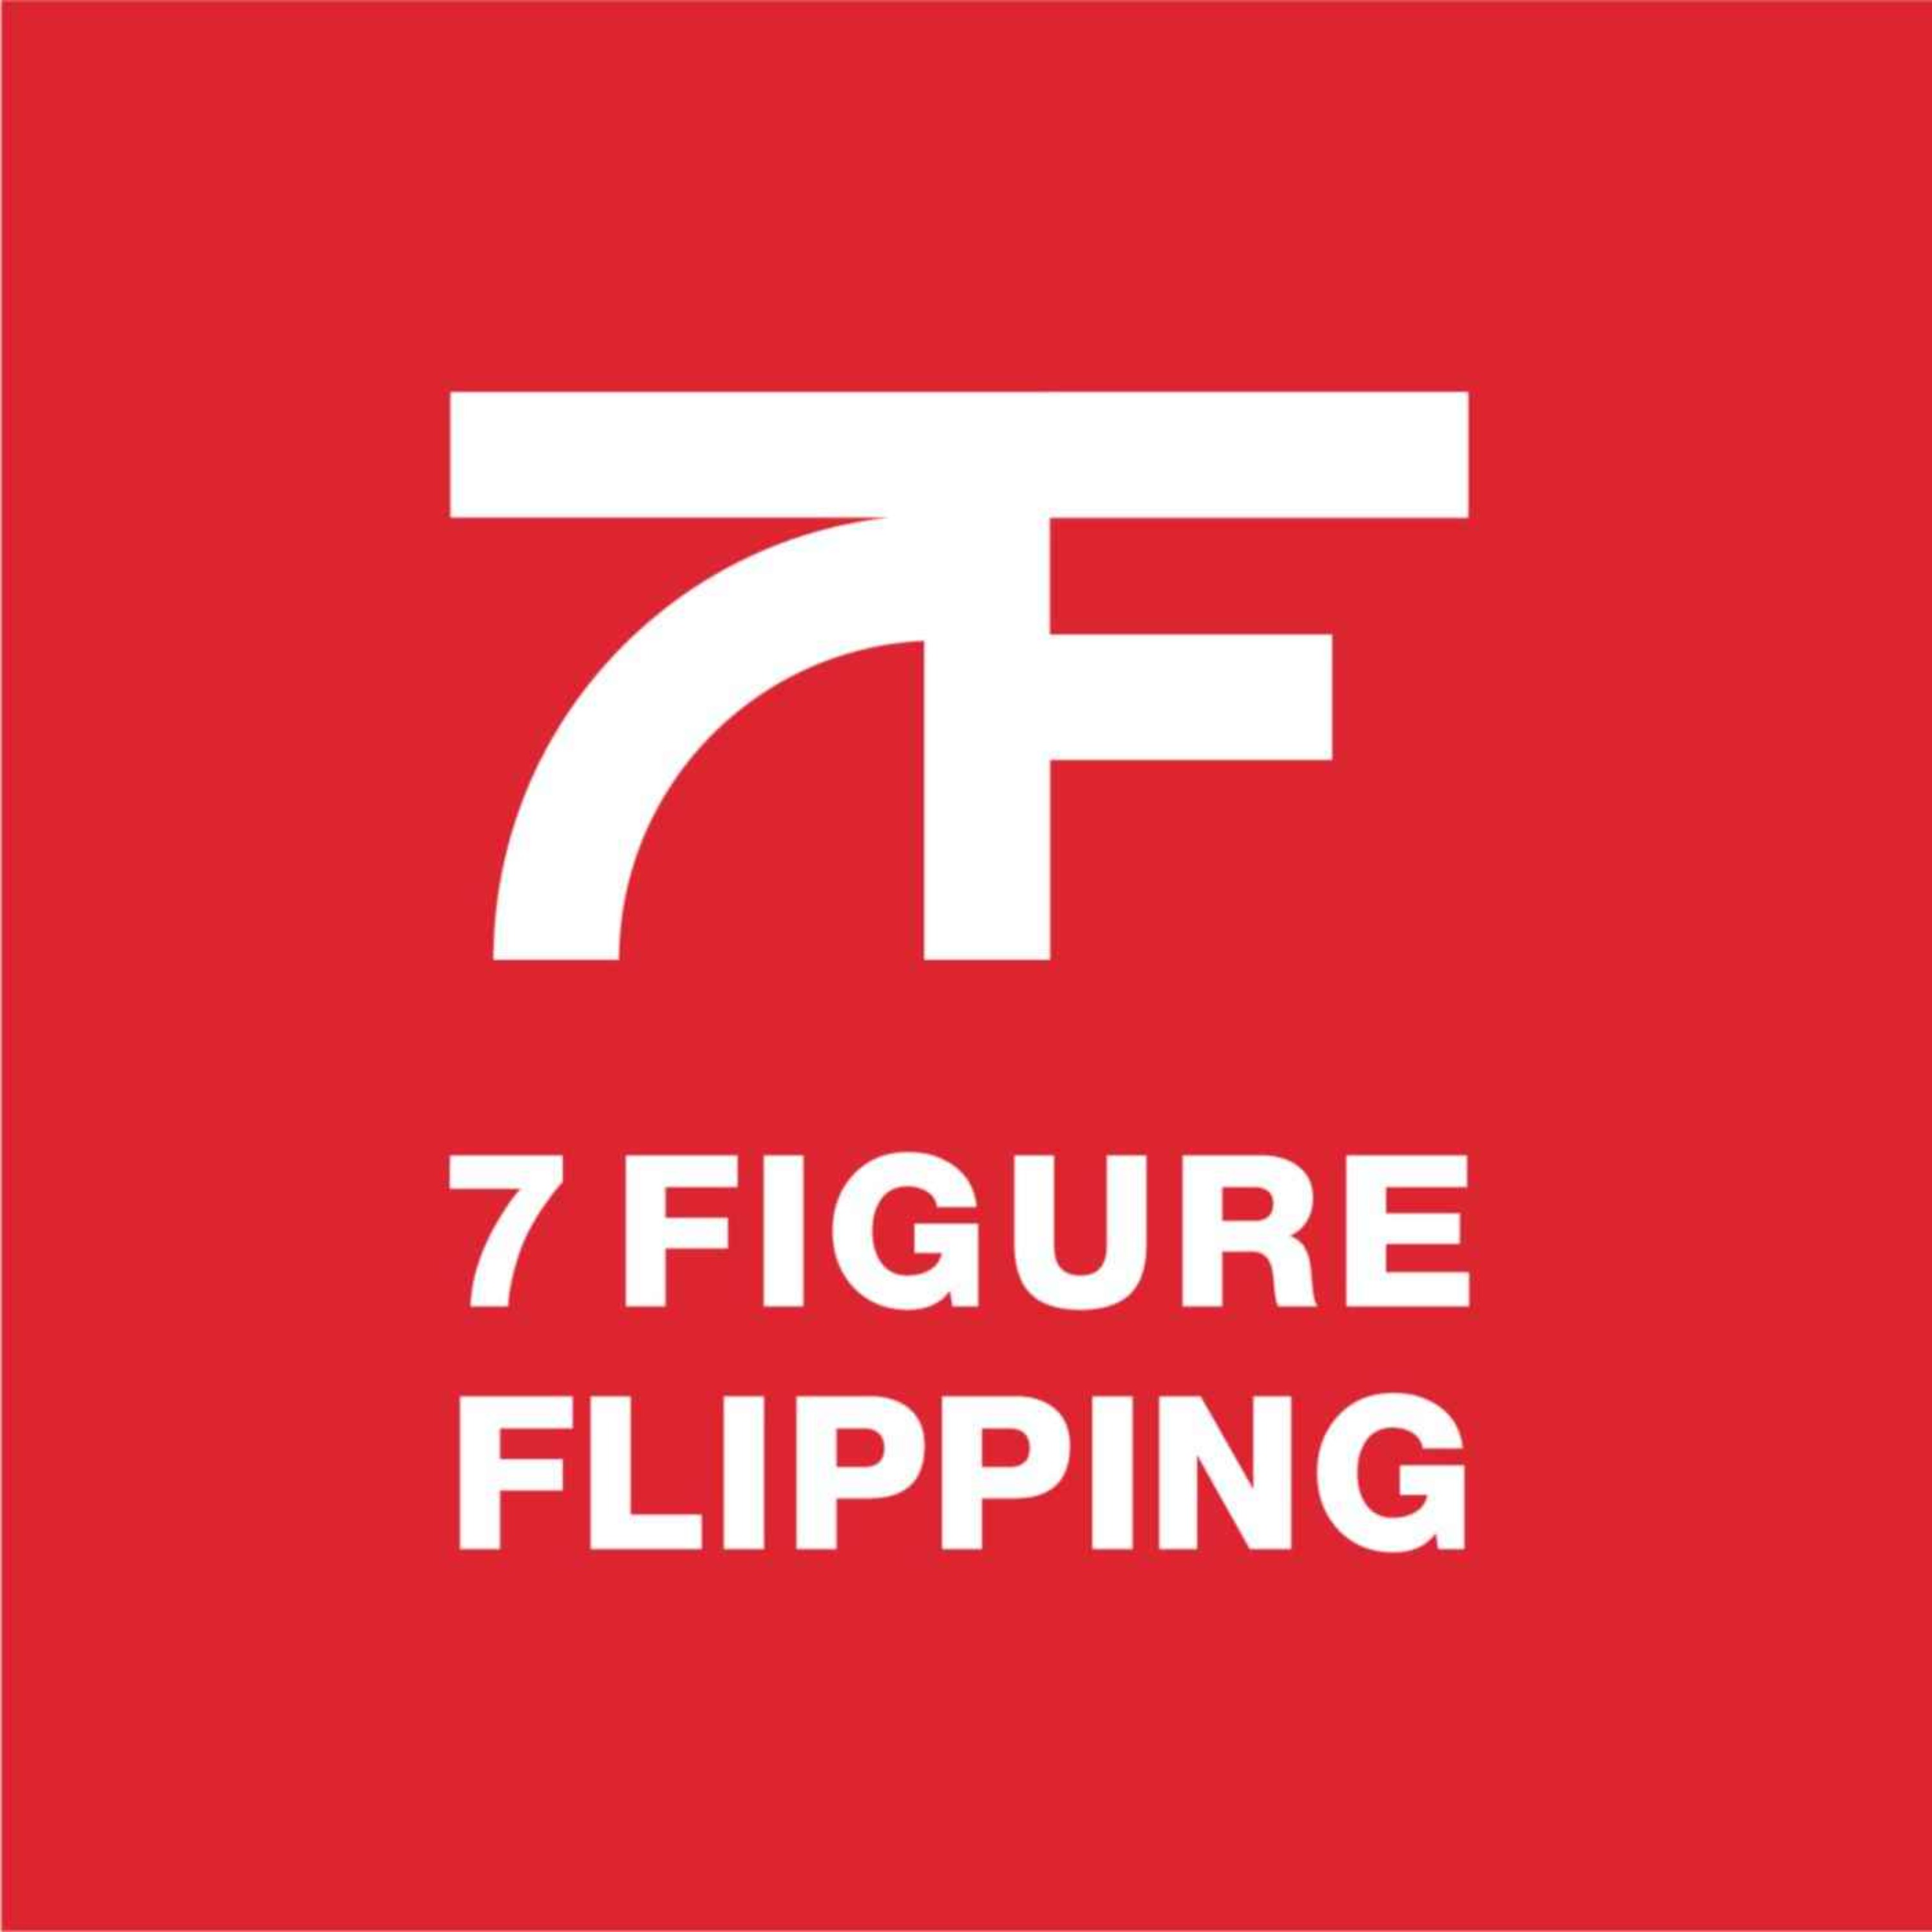 7 Figure Flipping with Bill Allen:Bill Allen